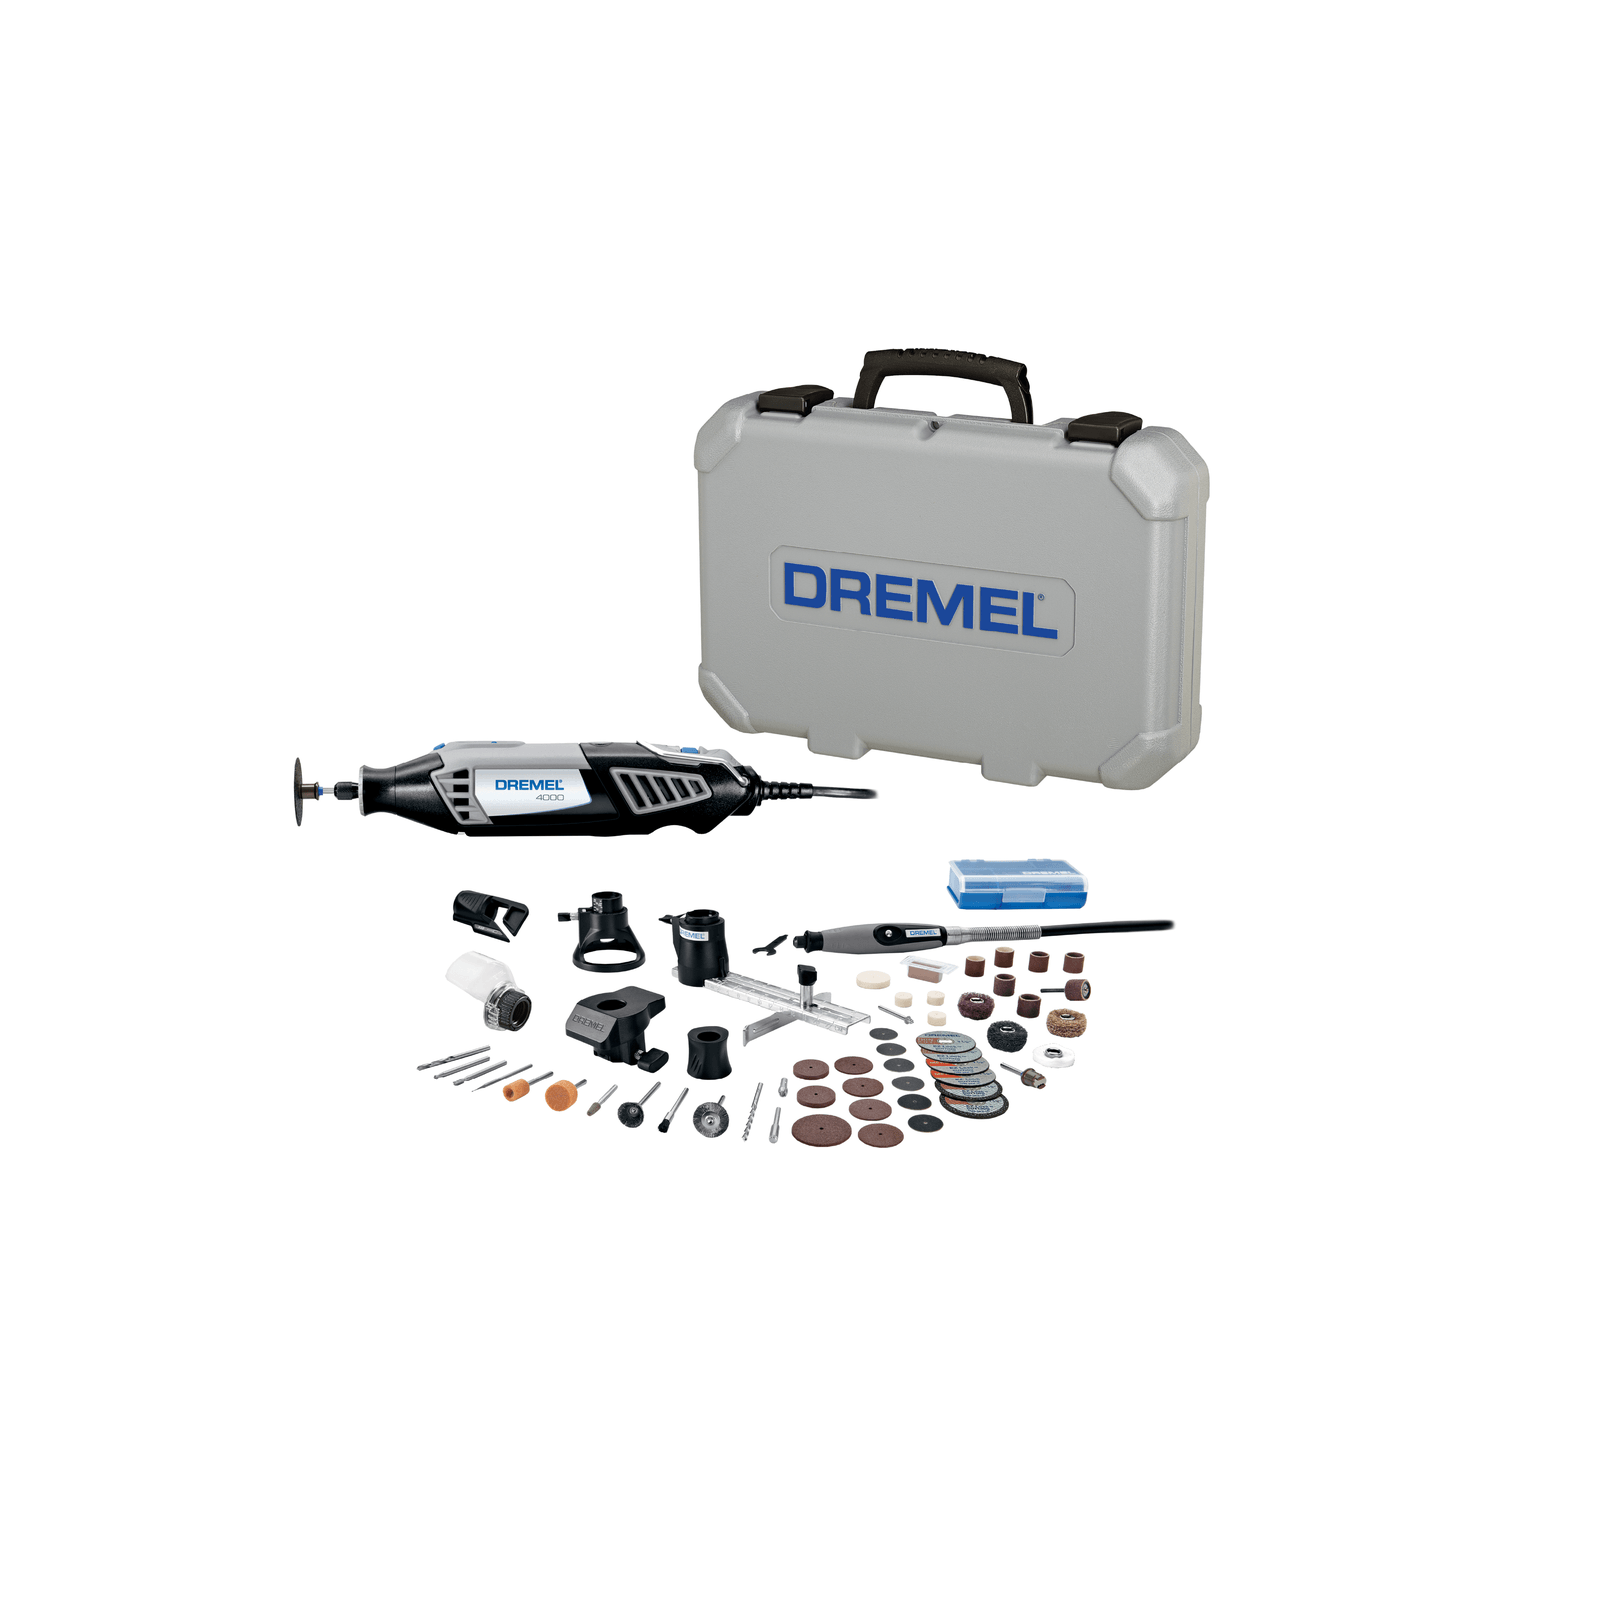 Dremel 4000-6/50 120 V Variable Speed Rotary Kit 